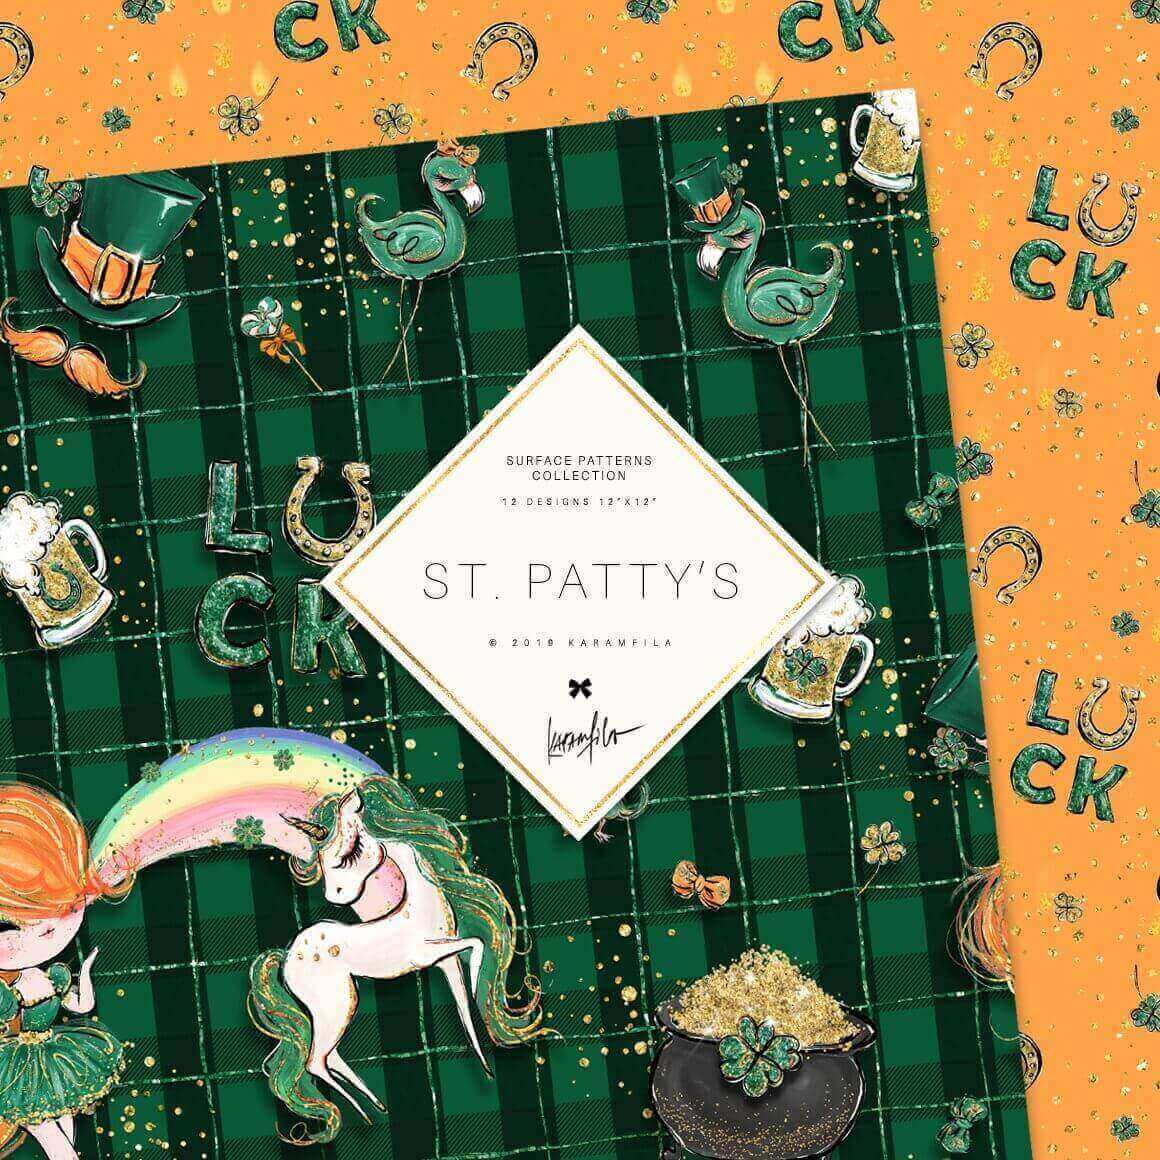 St. Patty's by Karamfila.